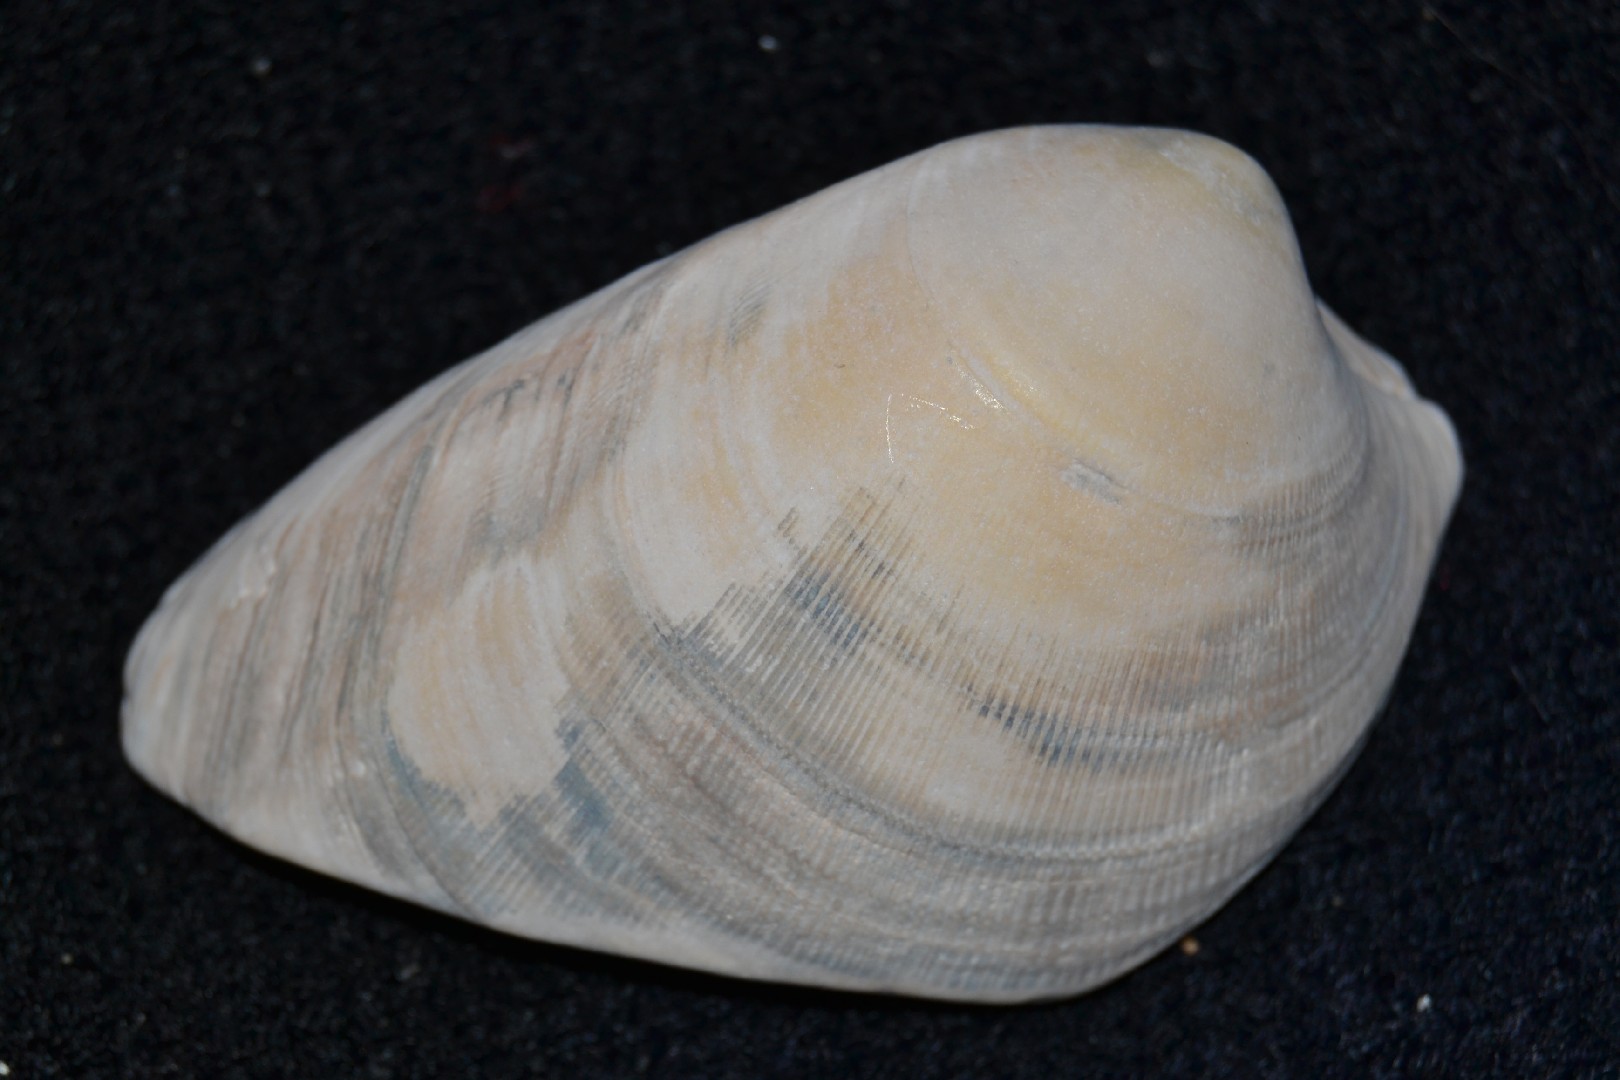 Hard clam (Mercenaria mercenaria)